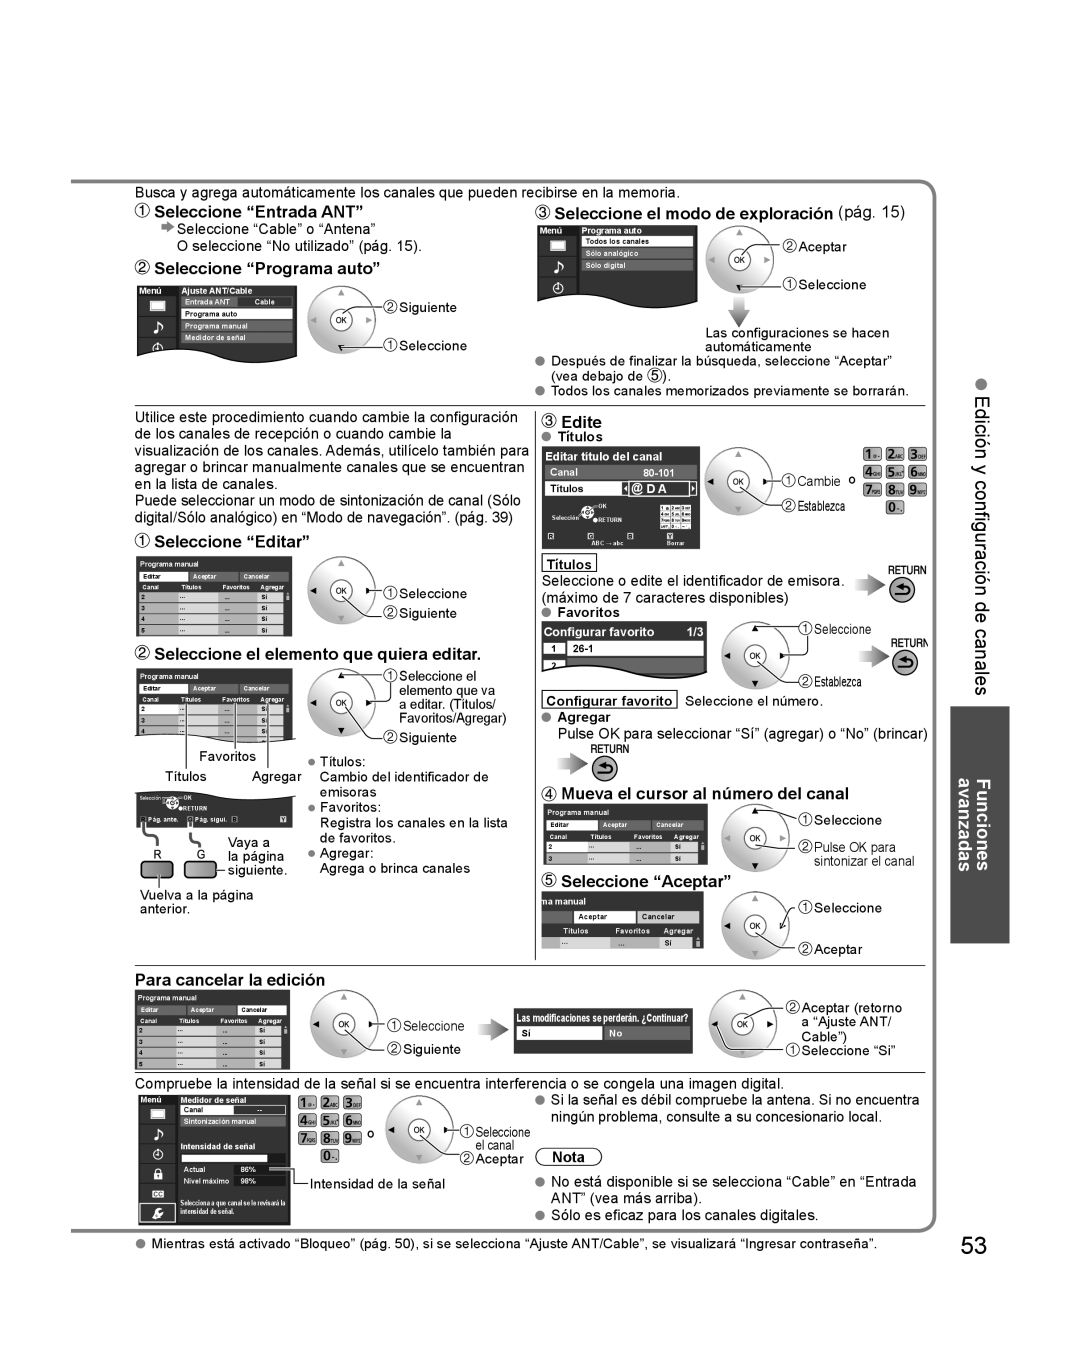 Panasonic TQB2AA0579 Seleccione “Entrada ANT”, Seleccione “Programa auto”, Seleccione el modo de exploración pág, Edite 